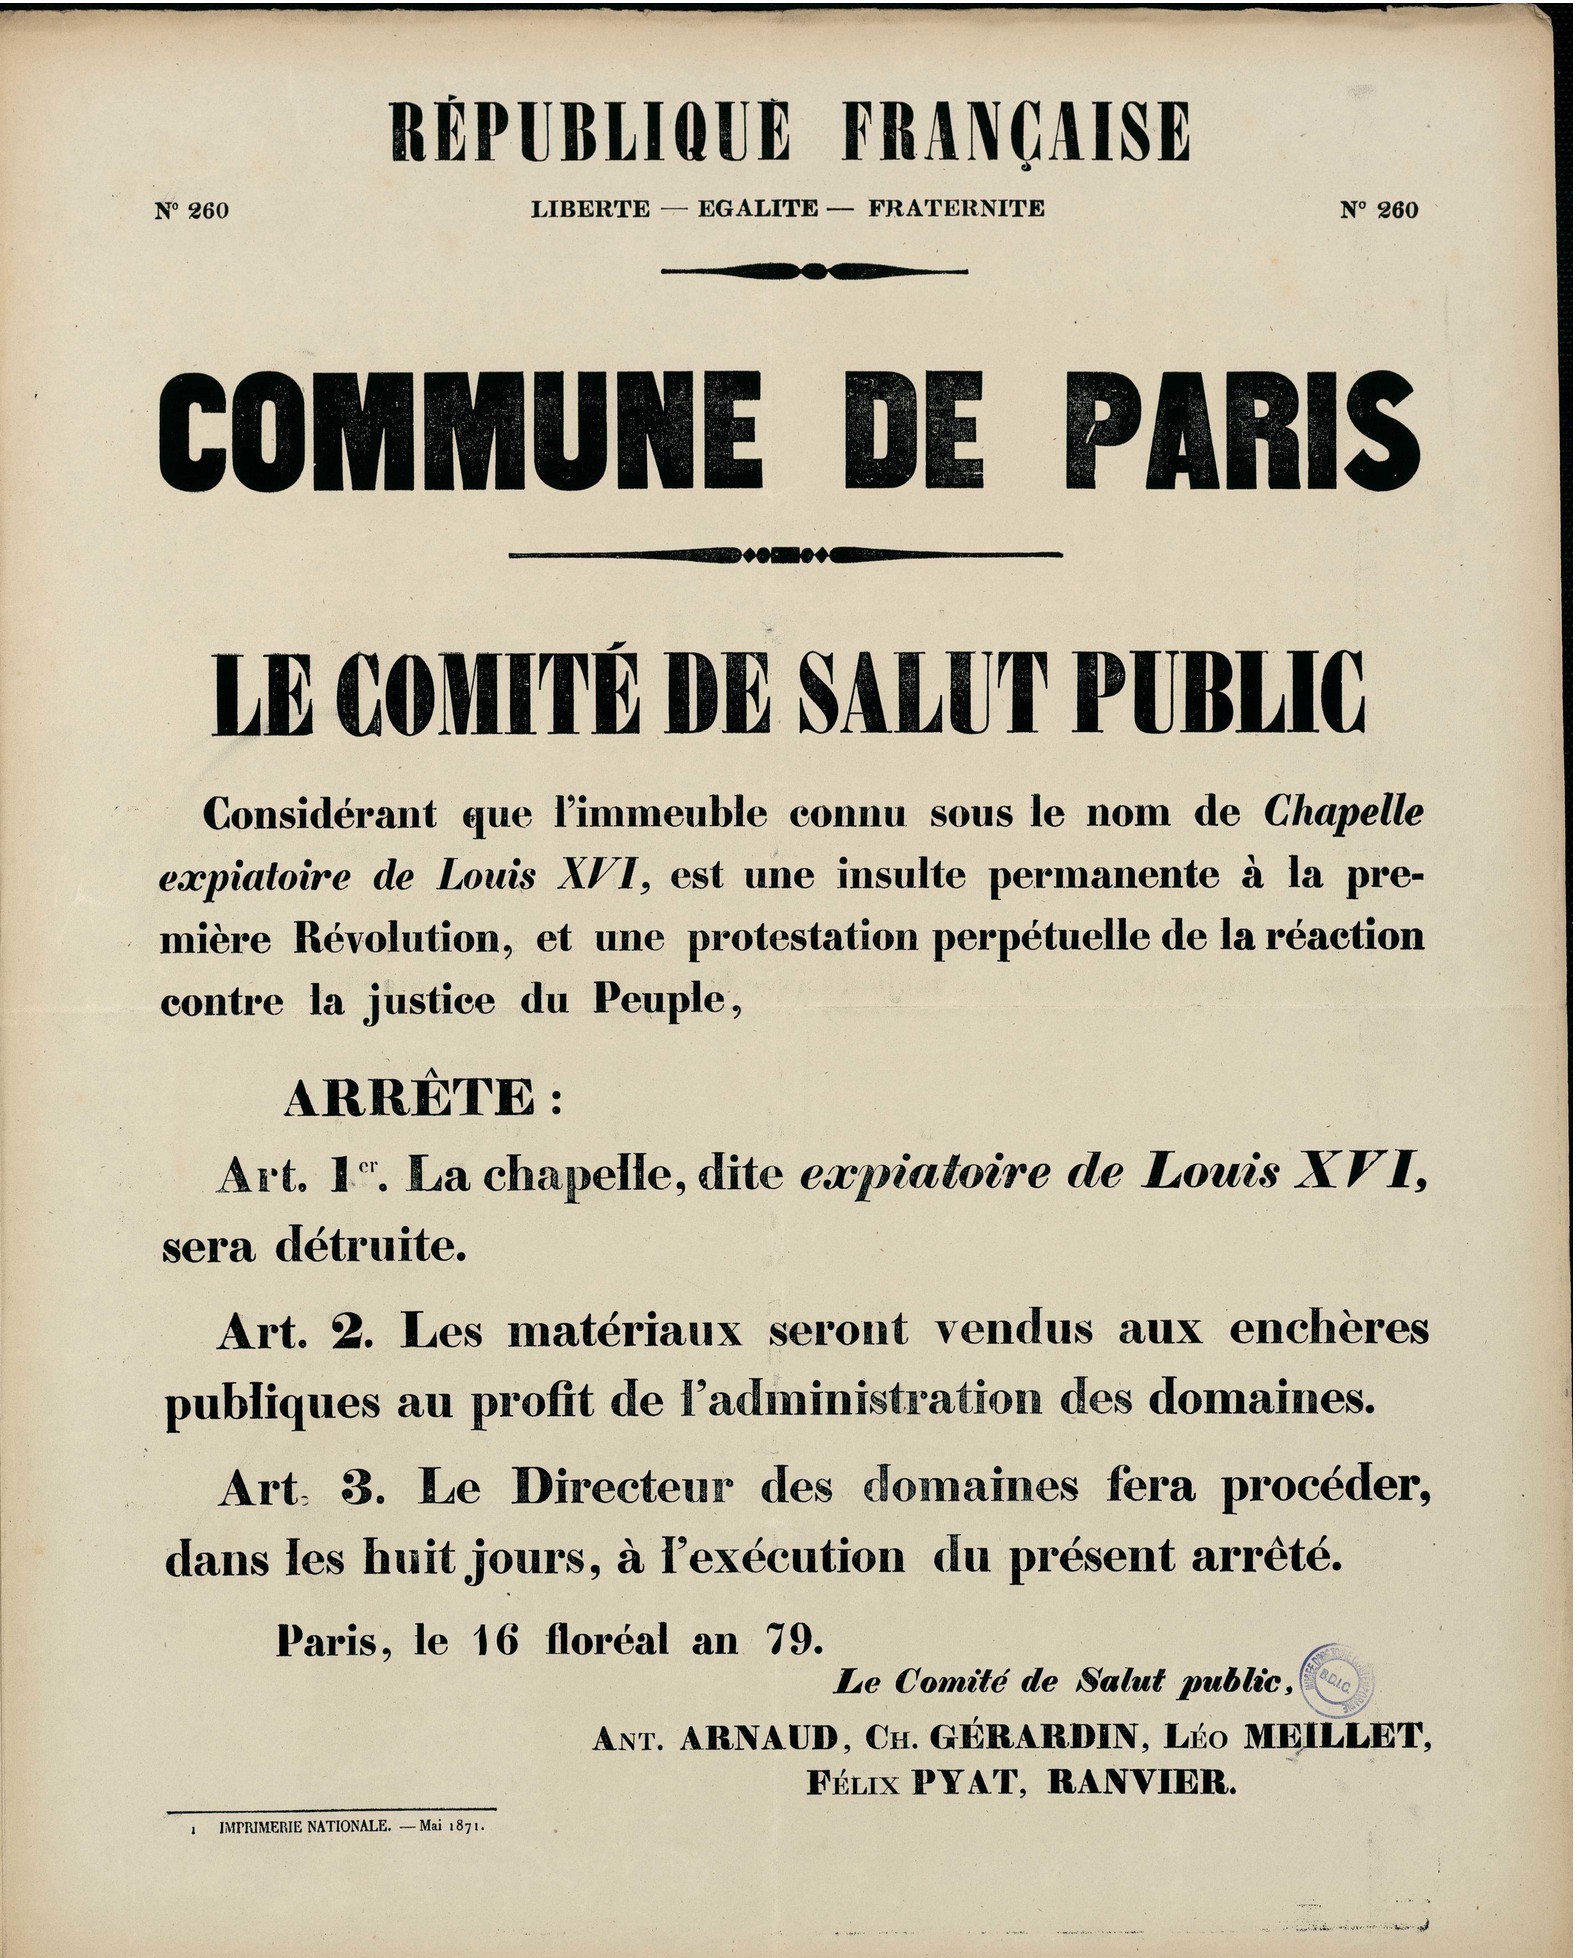 Affiche de la Commune de Paris N°260 du 16 floréal an 79, 6 mai 1871 - Destruction de la Chapelle expiatoire